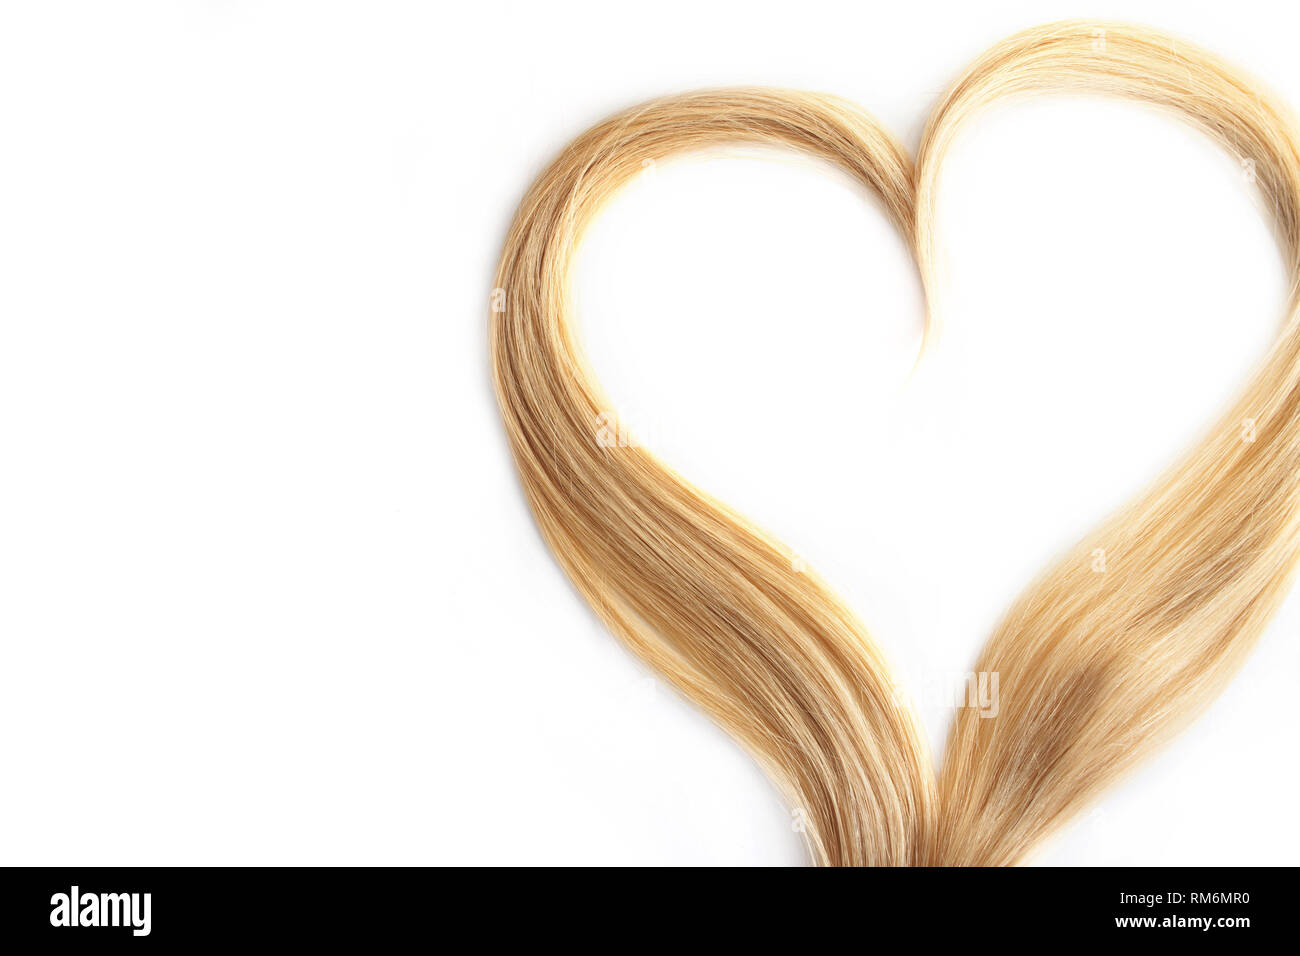 Ausrichtung des blonden Haares auf Weiß isoliert. Locken Haare in der Form eines Herzens, Gesundheit und Hair Care Konzept. Stockfoto